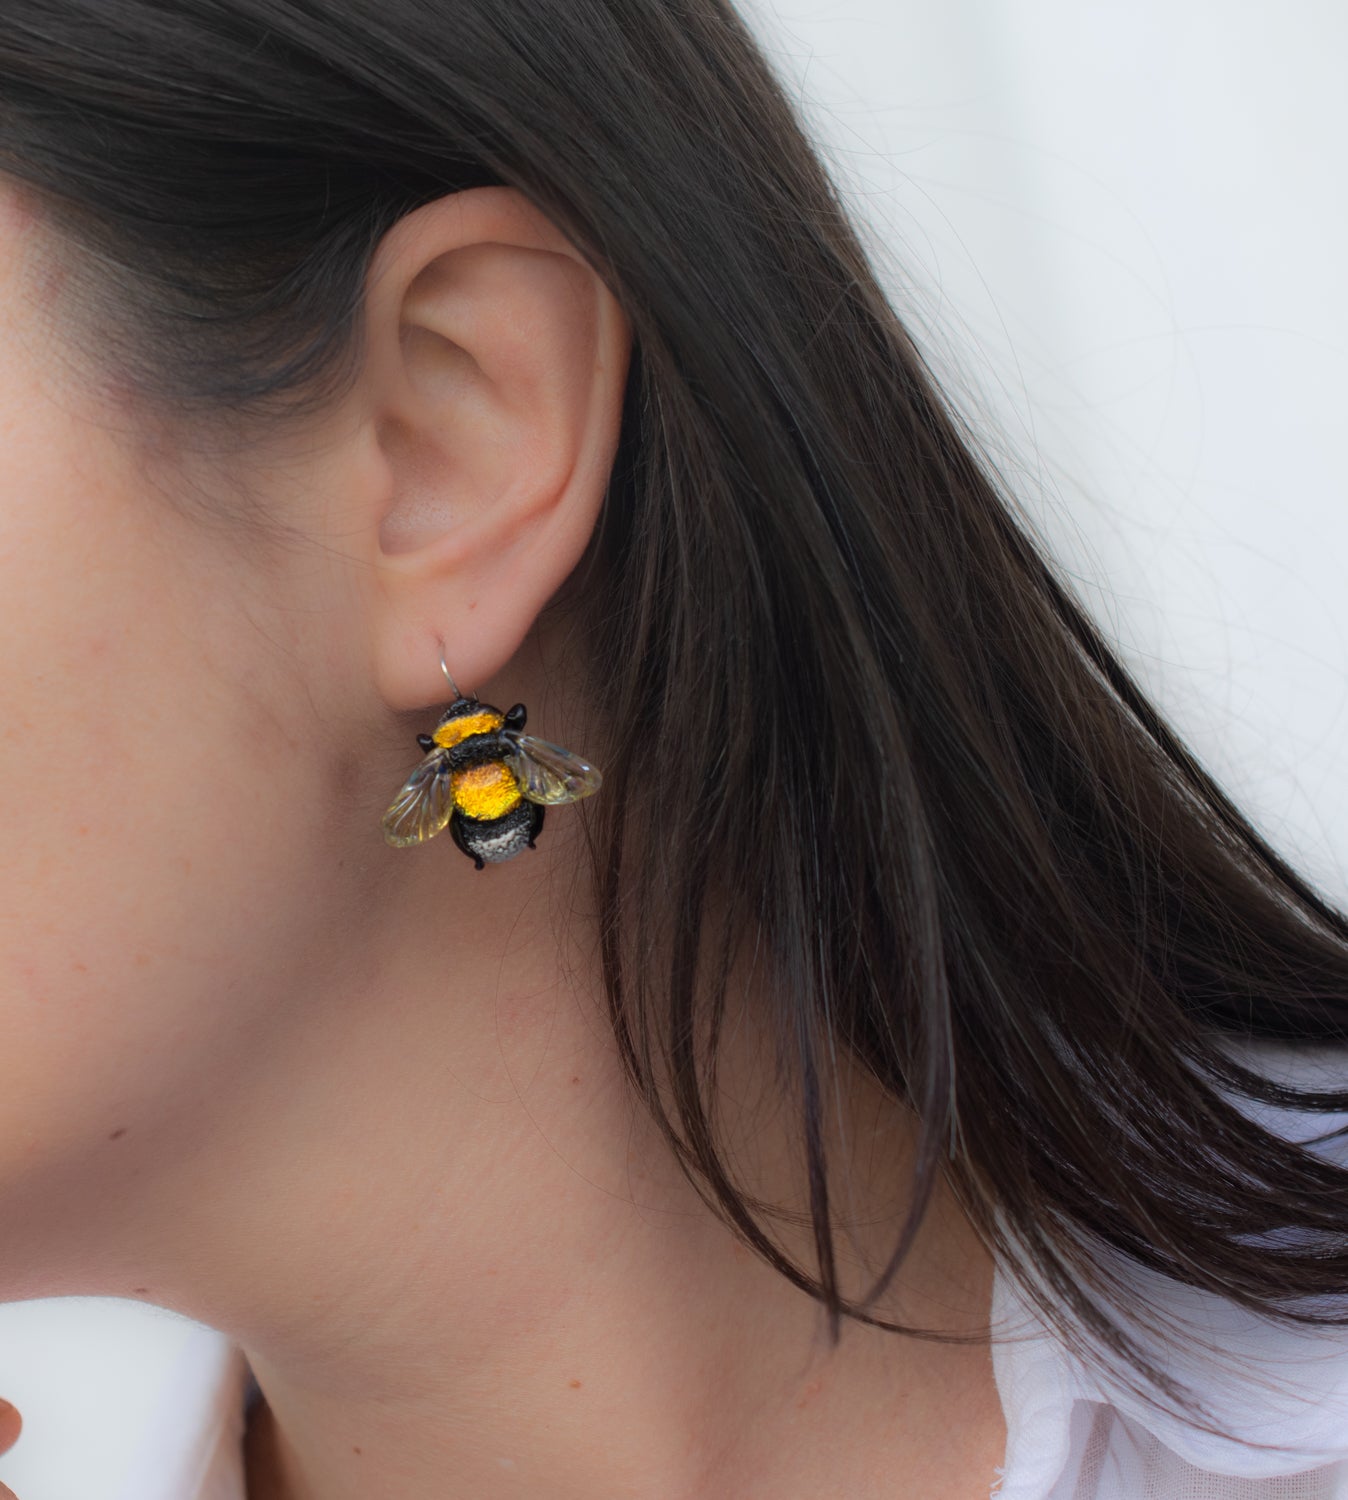 Bee earrings yellow blue